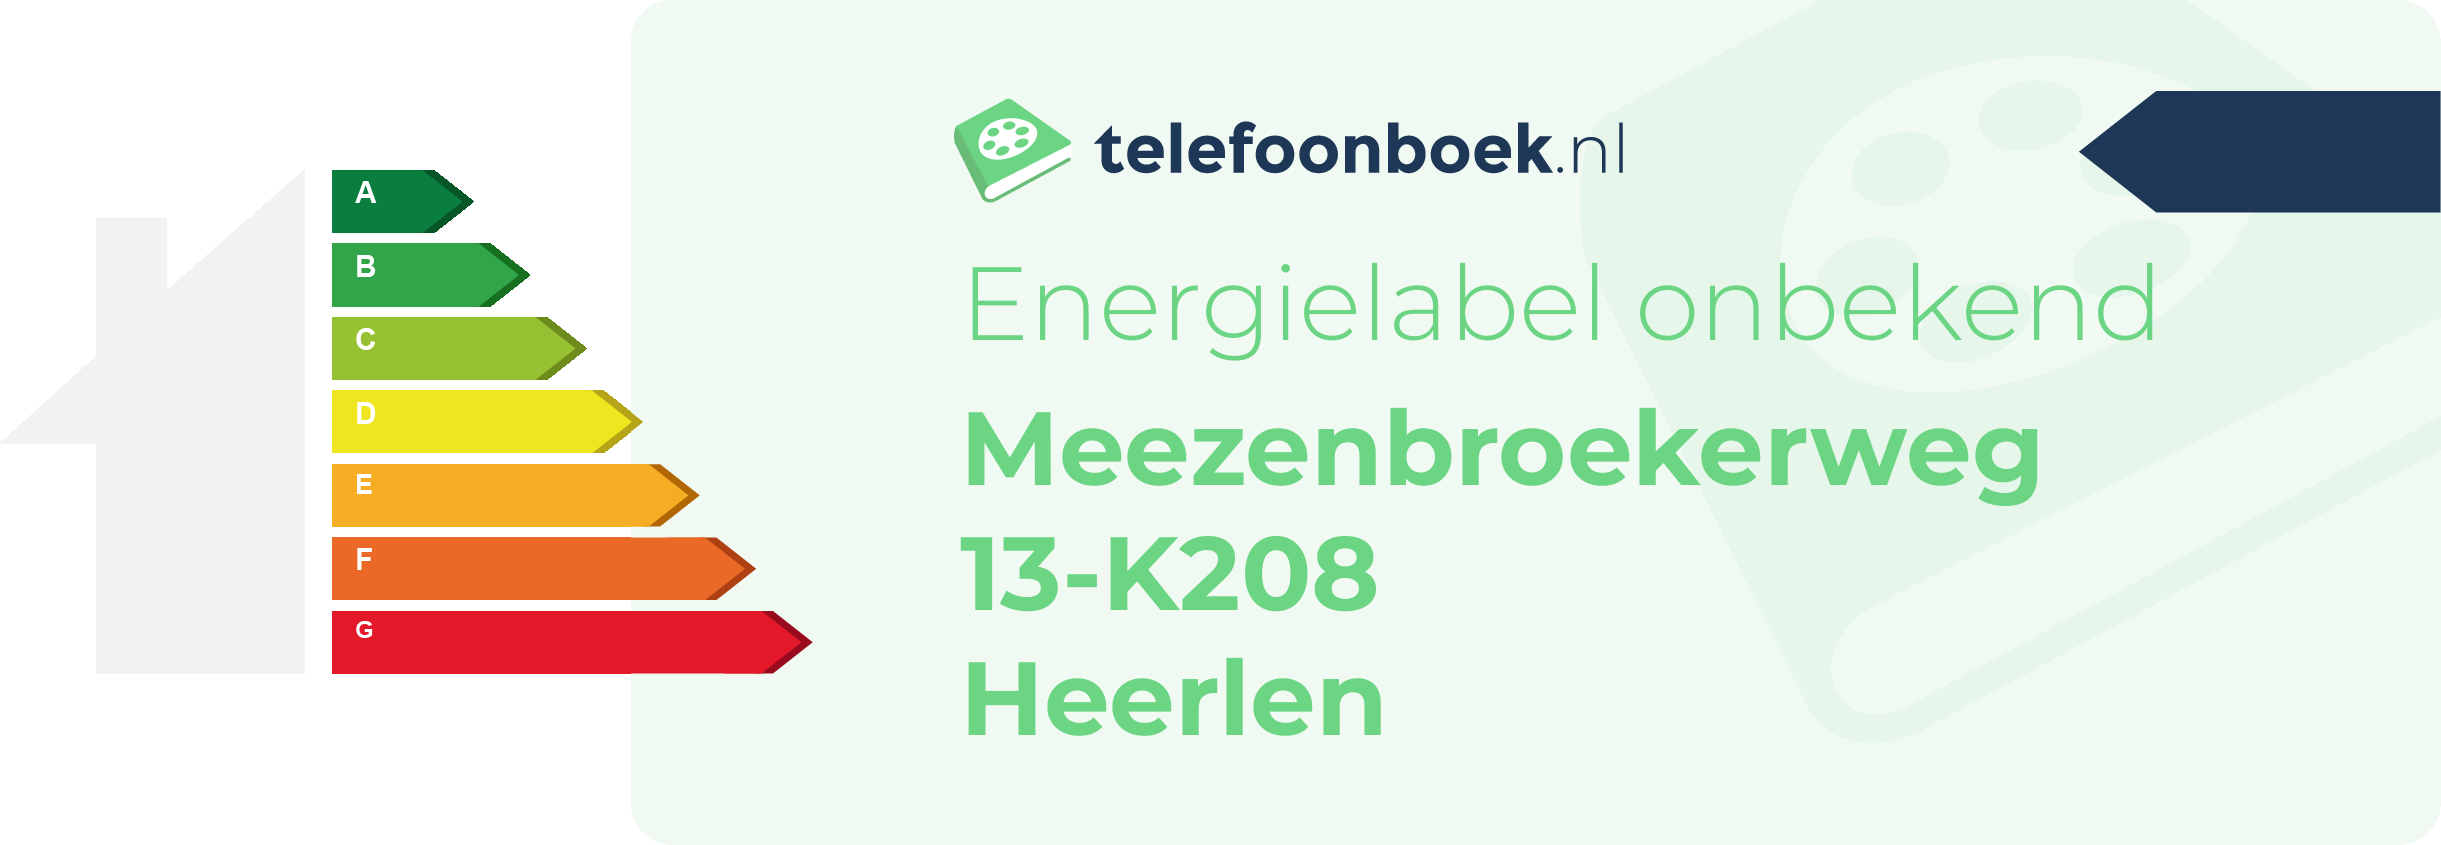 Energielabel Meezenbroekerweg 13-K208 Heerlen